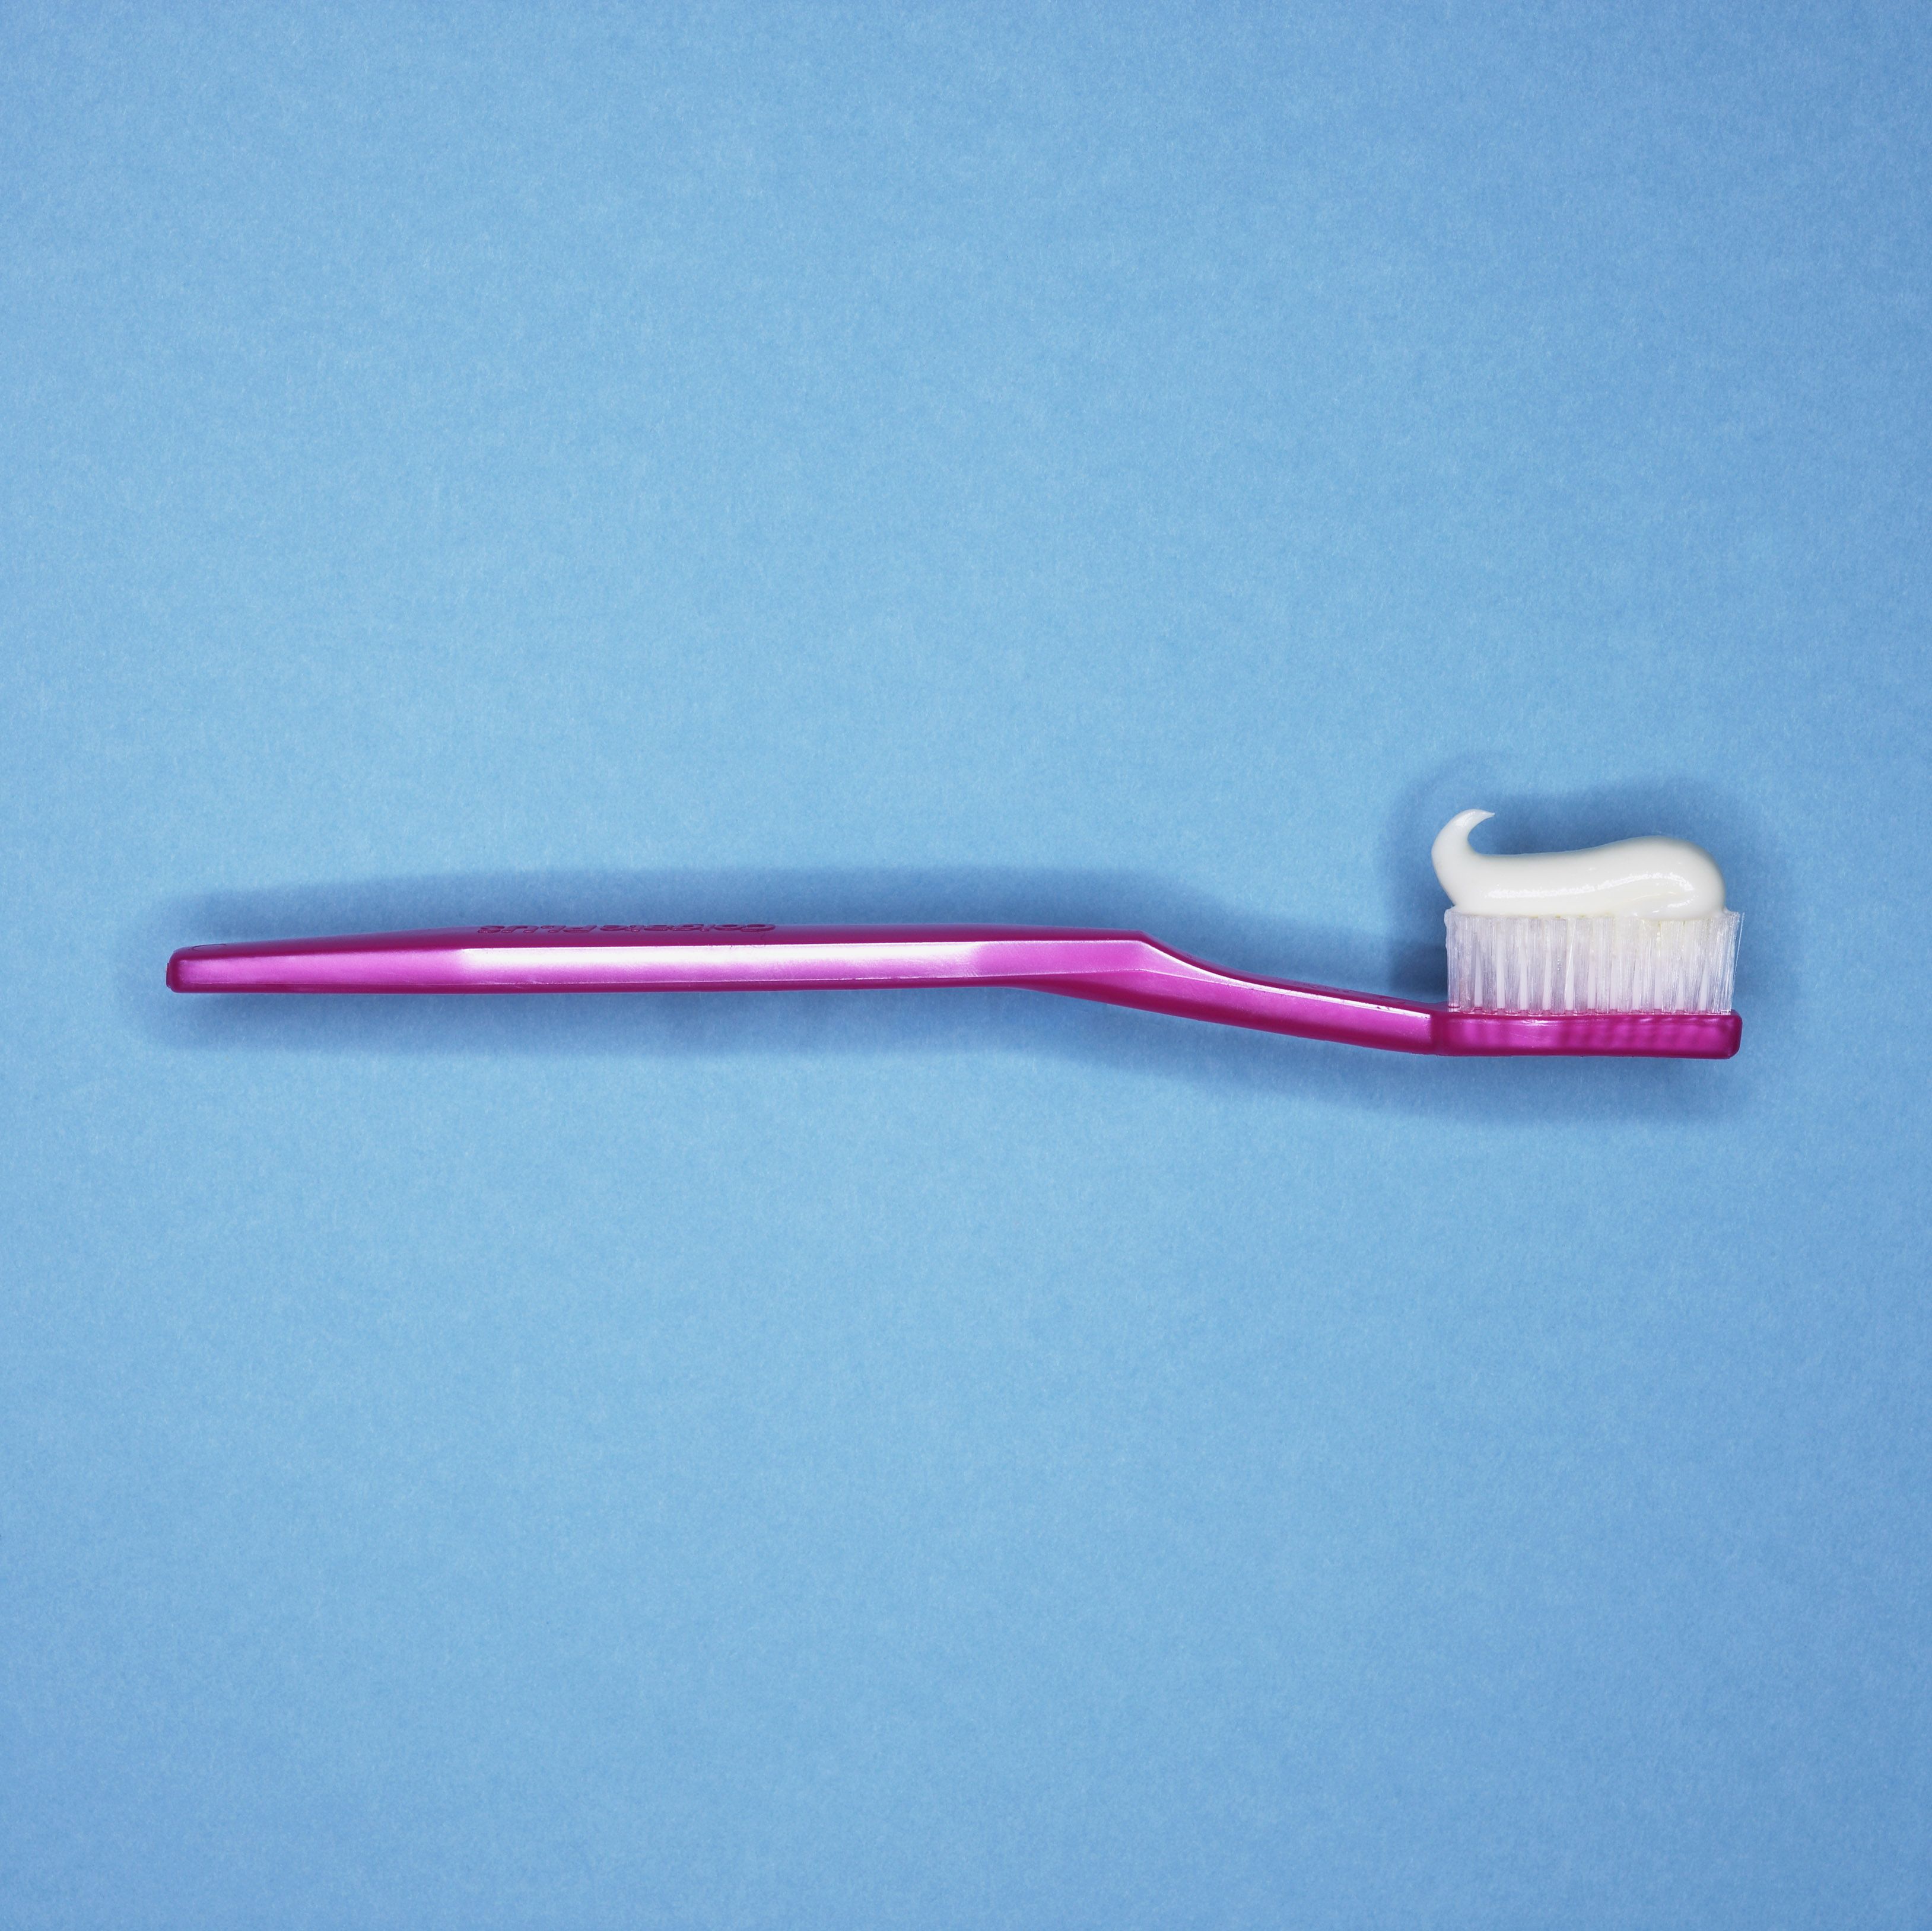 Tandpasta fluoride kopen? Dit zijn de fijnste merken